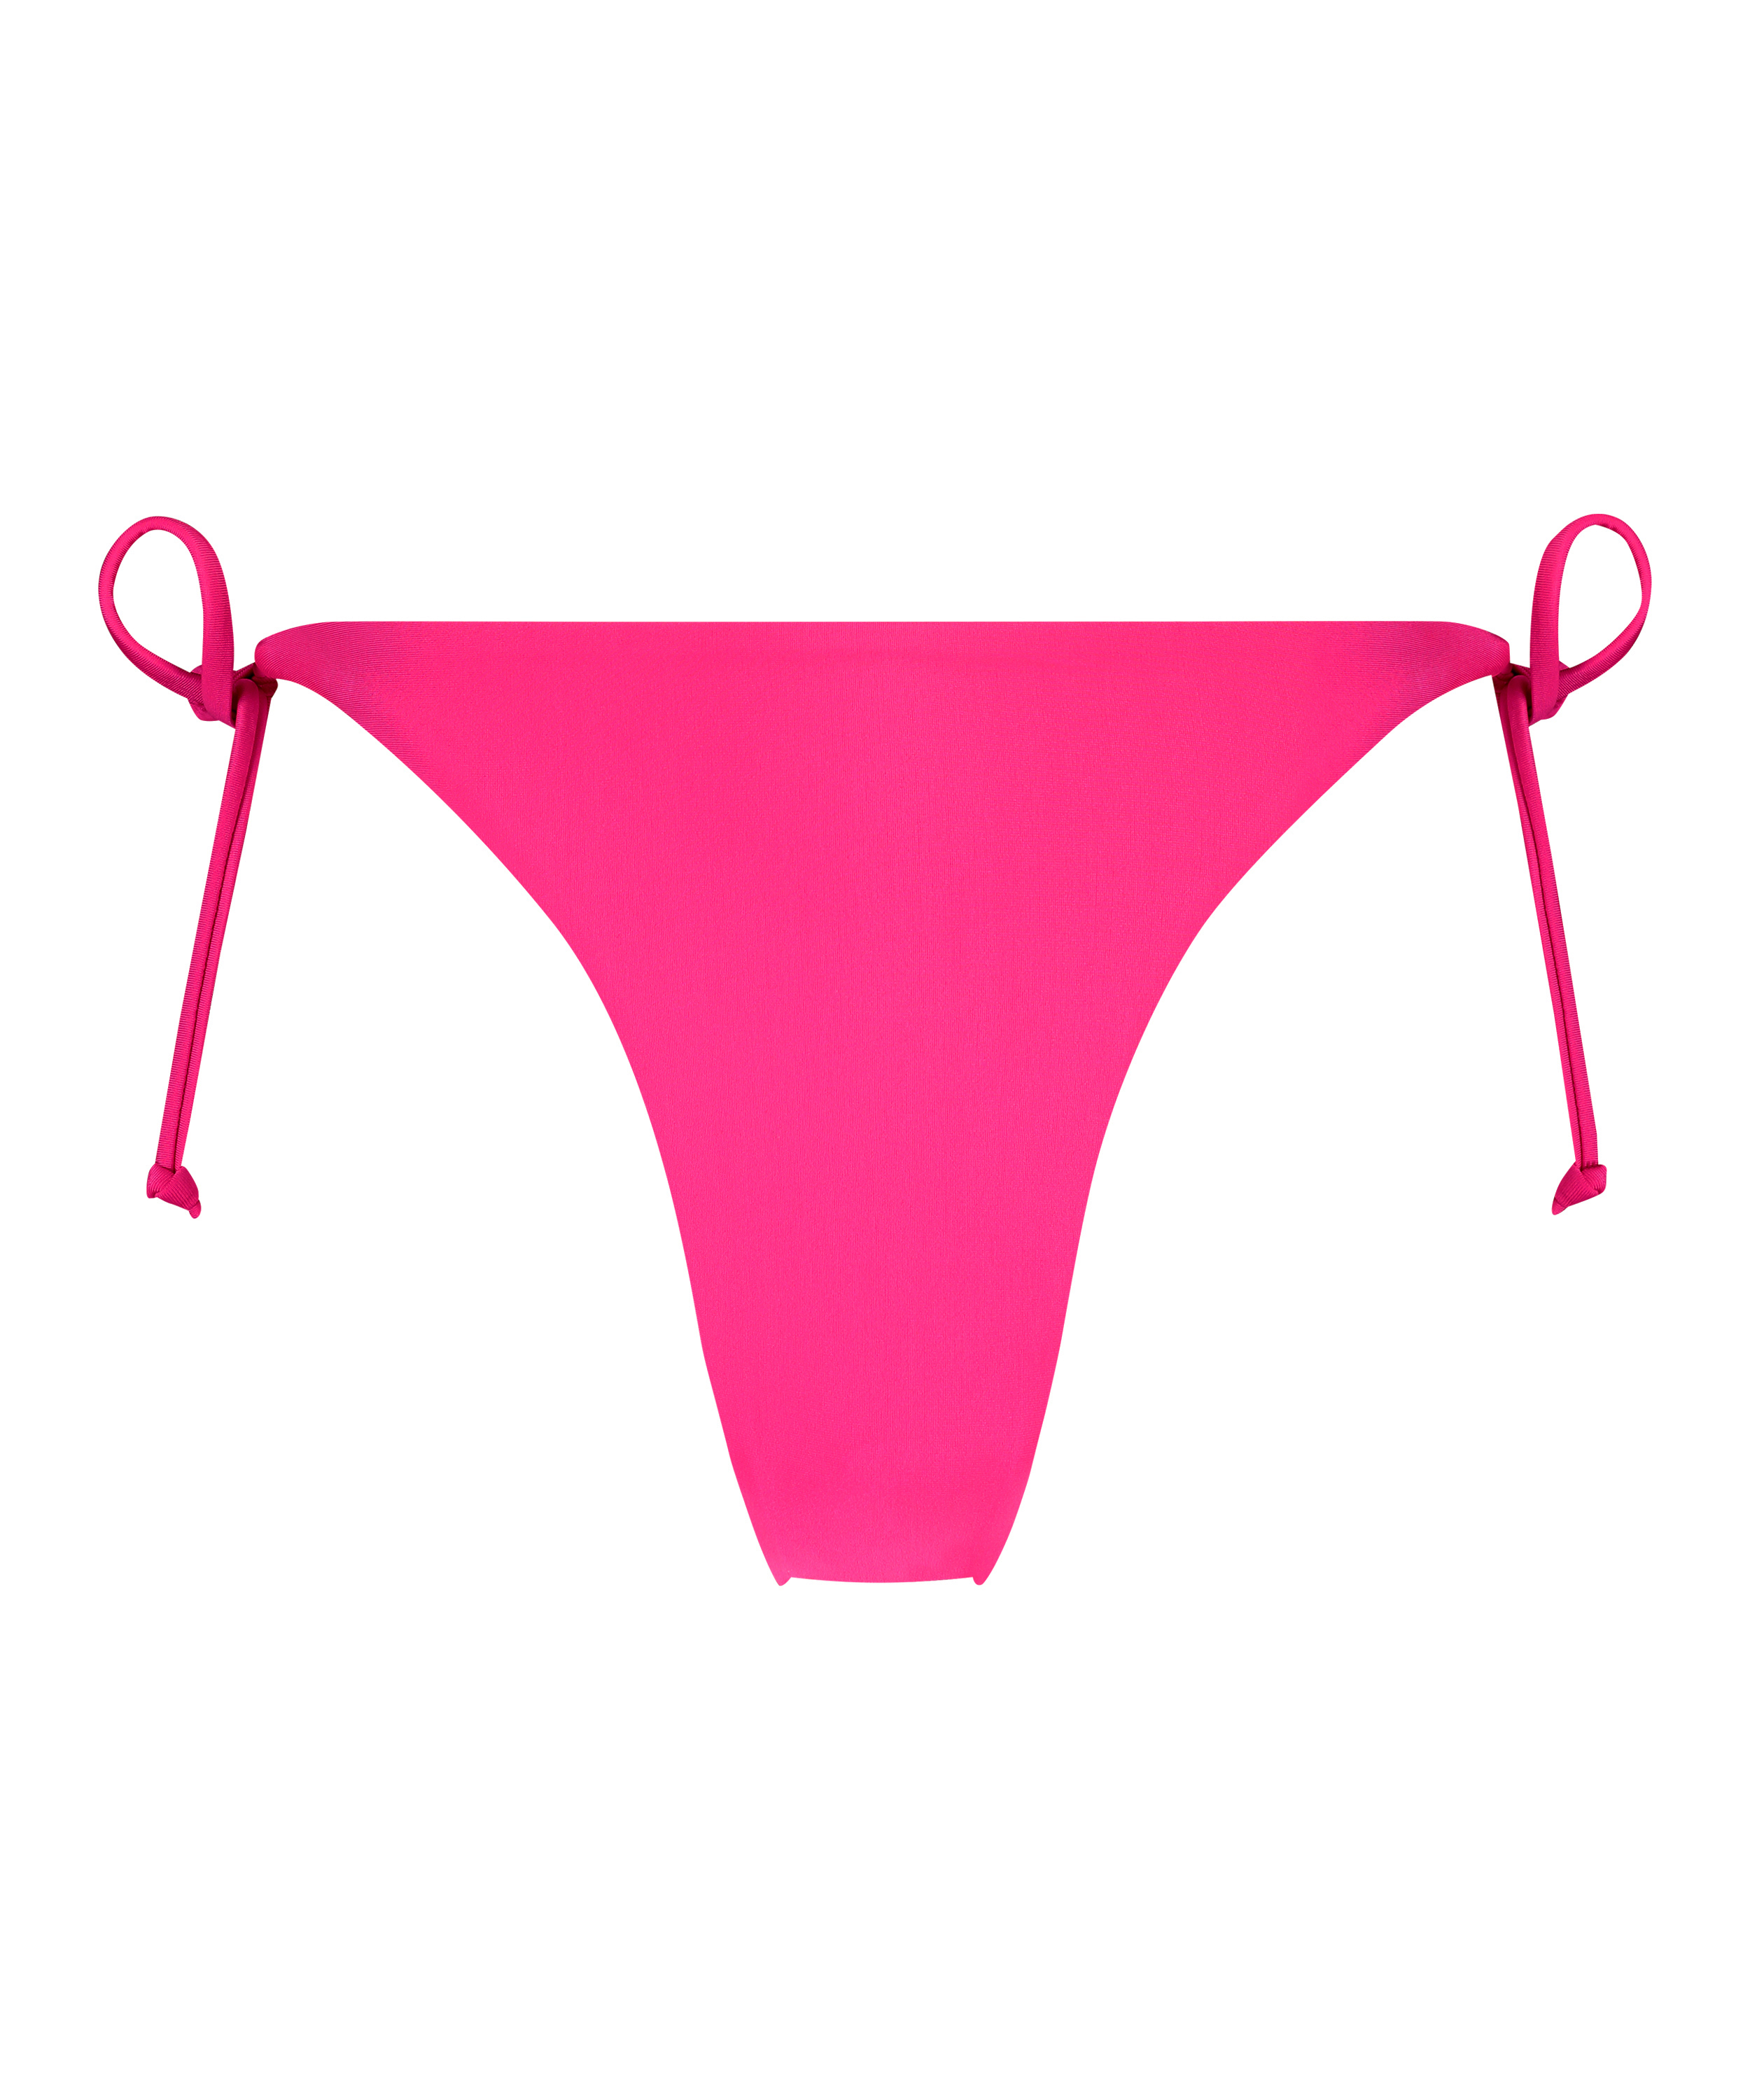 G-streng Bikinitrusse Naples, pink, main